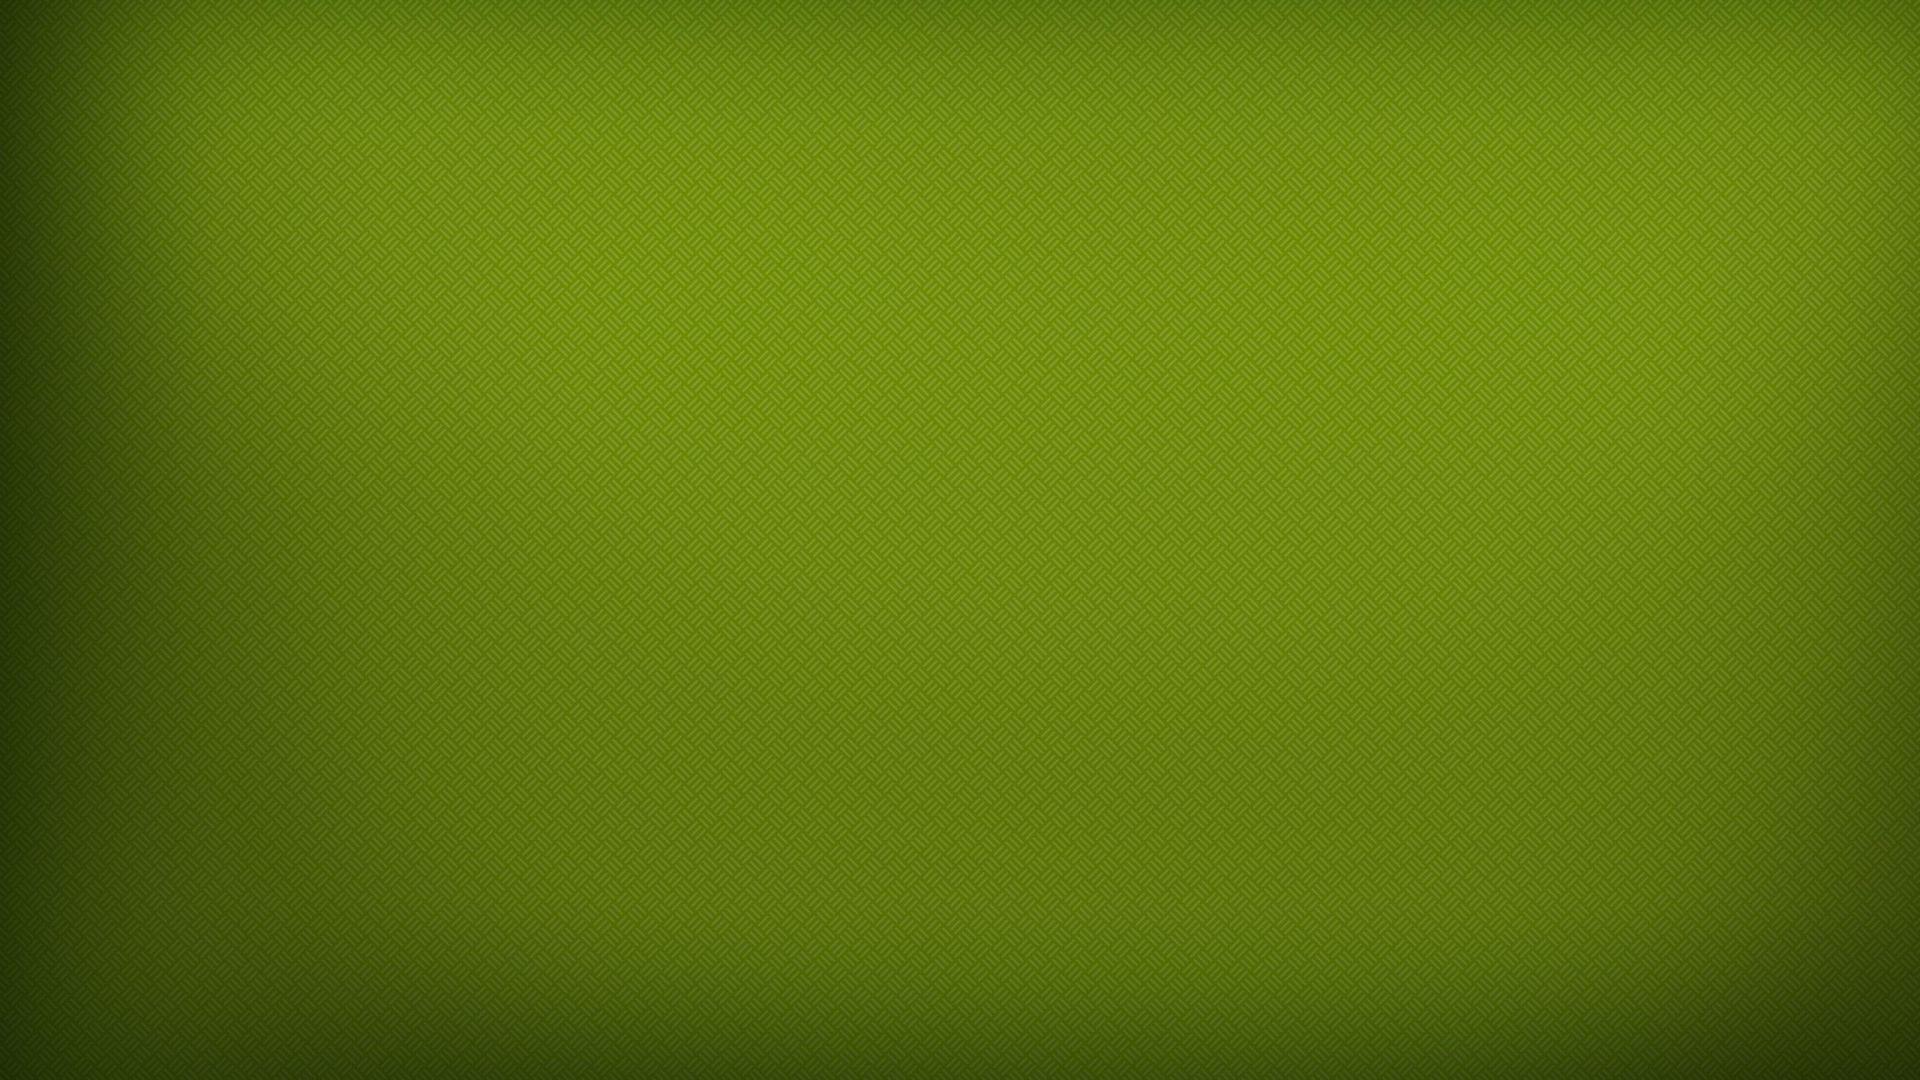 Cool Green Textured Backgrounds 6922 1920 x 1080 - WallpaperLayer com